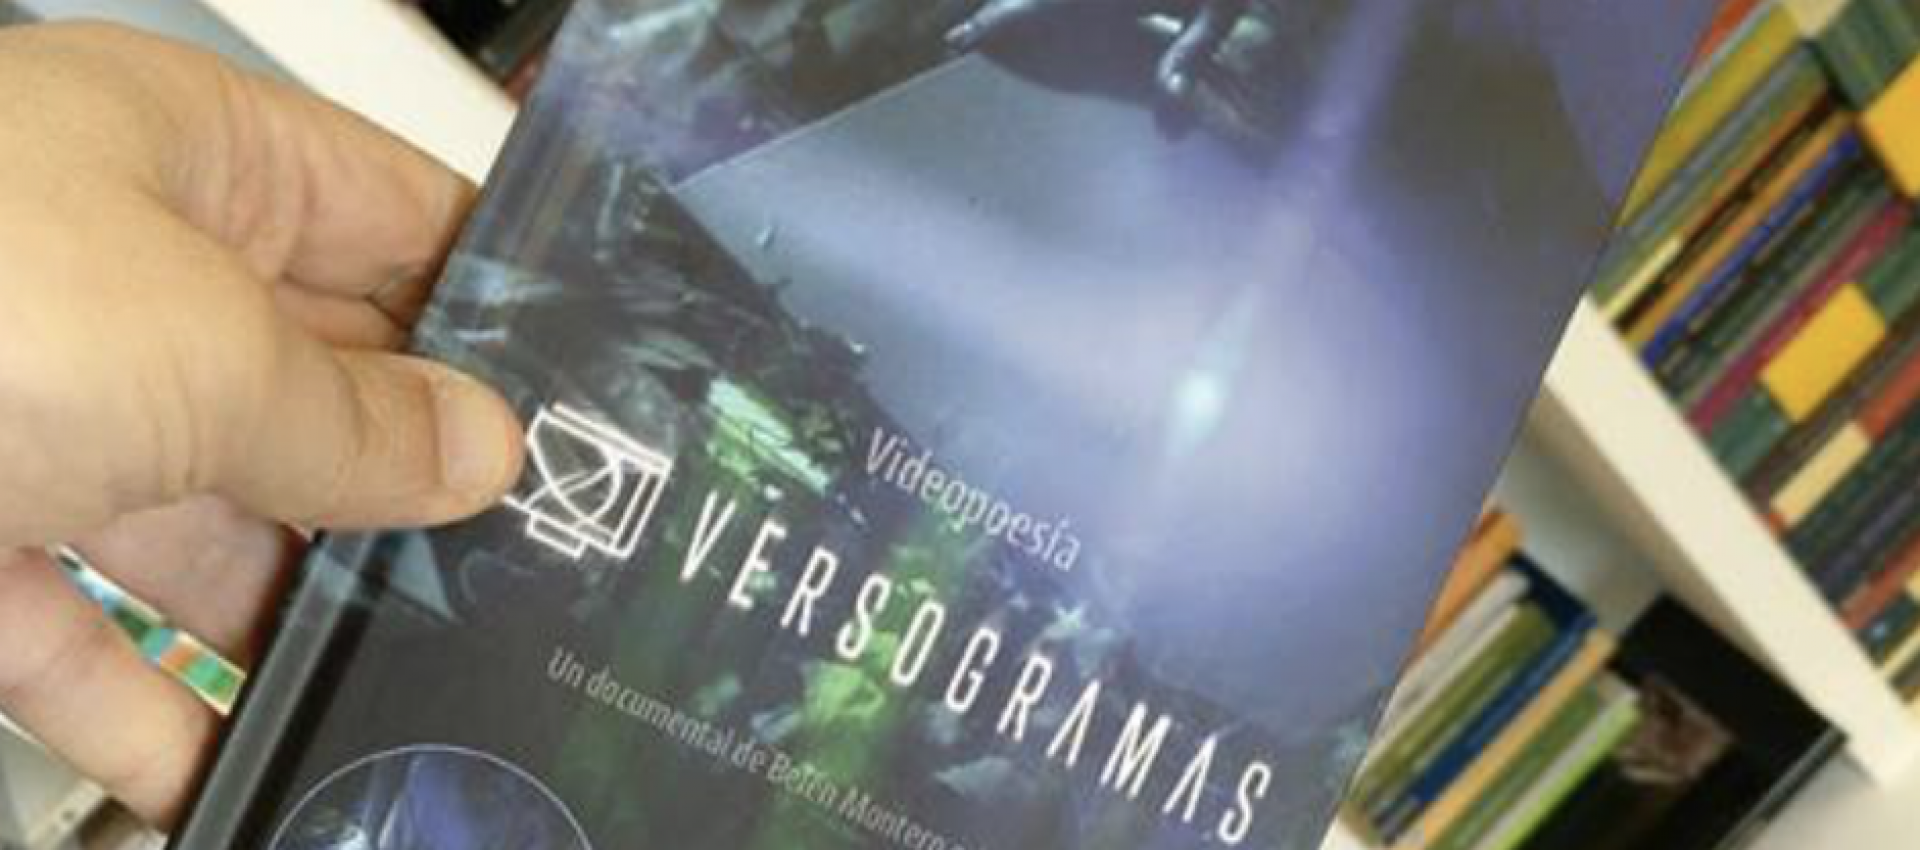 O libroDVD Versogramas (Editorial Galaxia) chega ás librarías